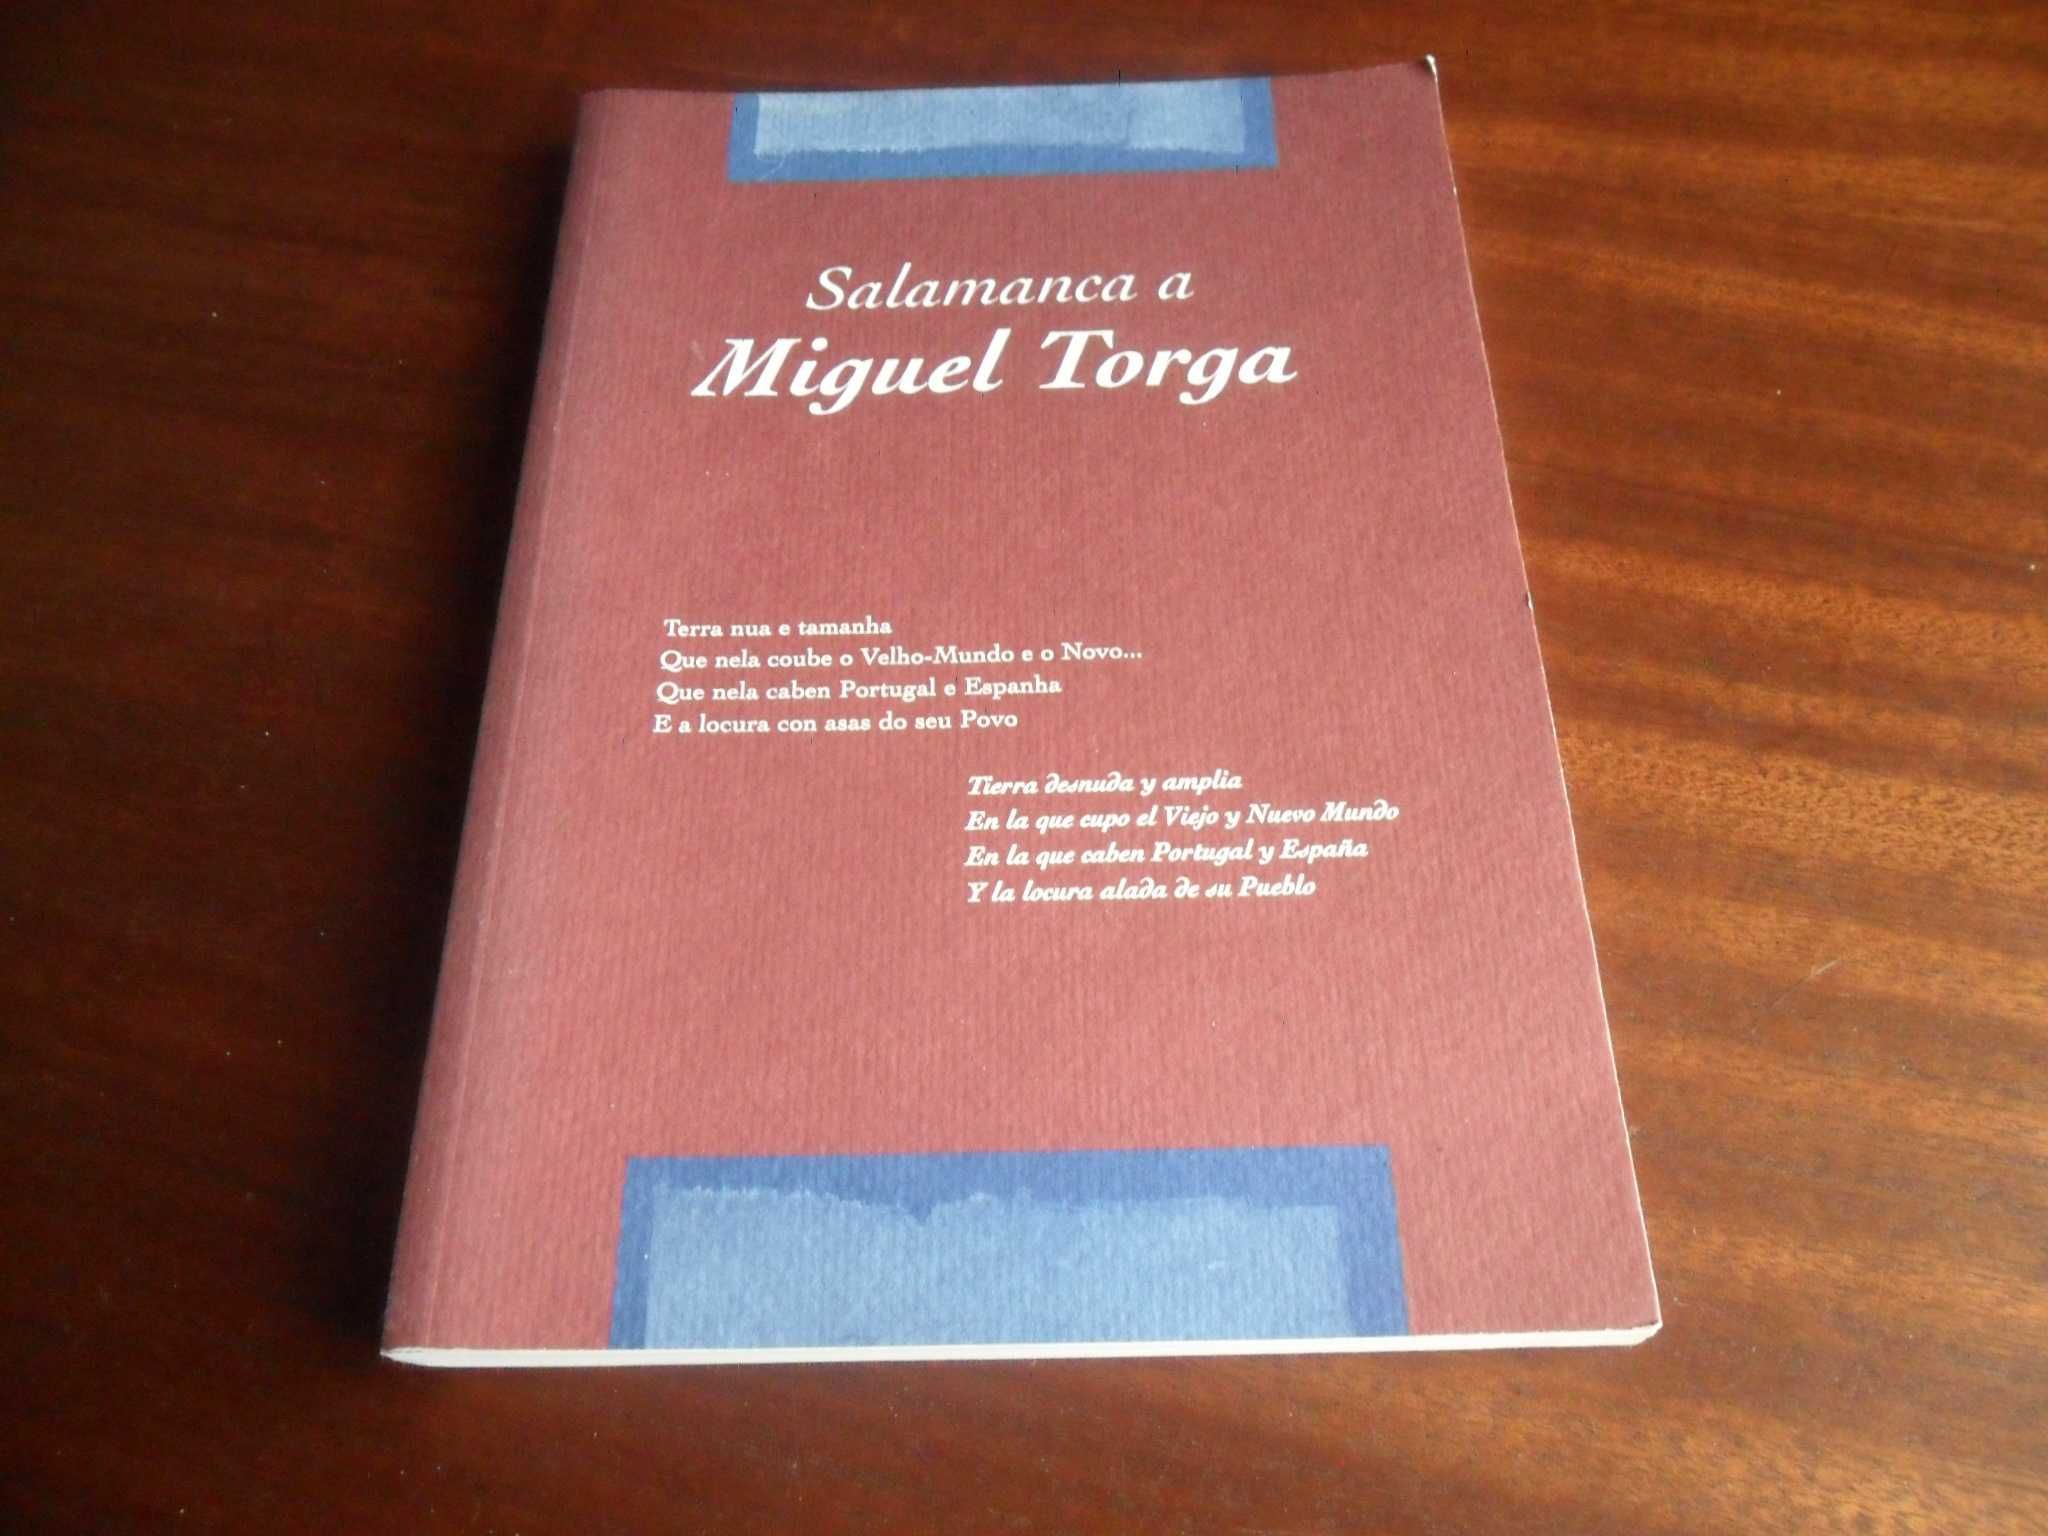 "Salamanca a Miguel Torga" de Vários - 1ª Edição de 2007